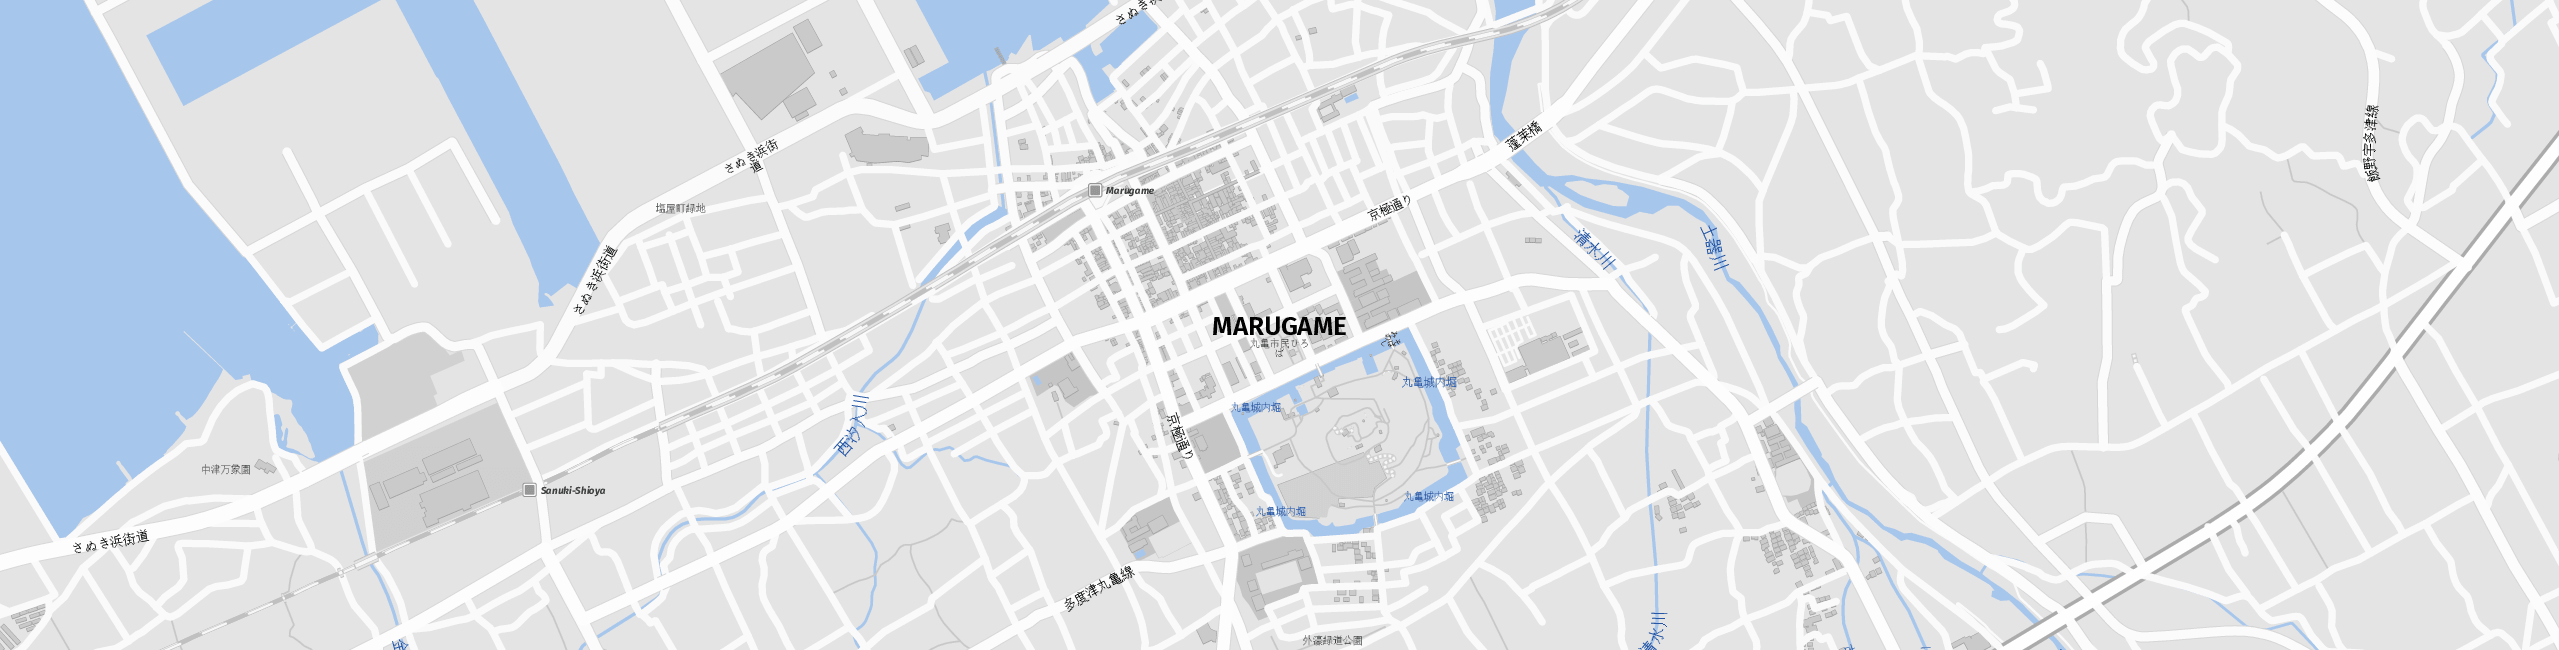 Stadtplan Marugame zum Downloaden.